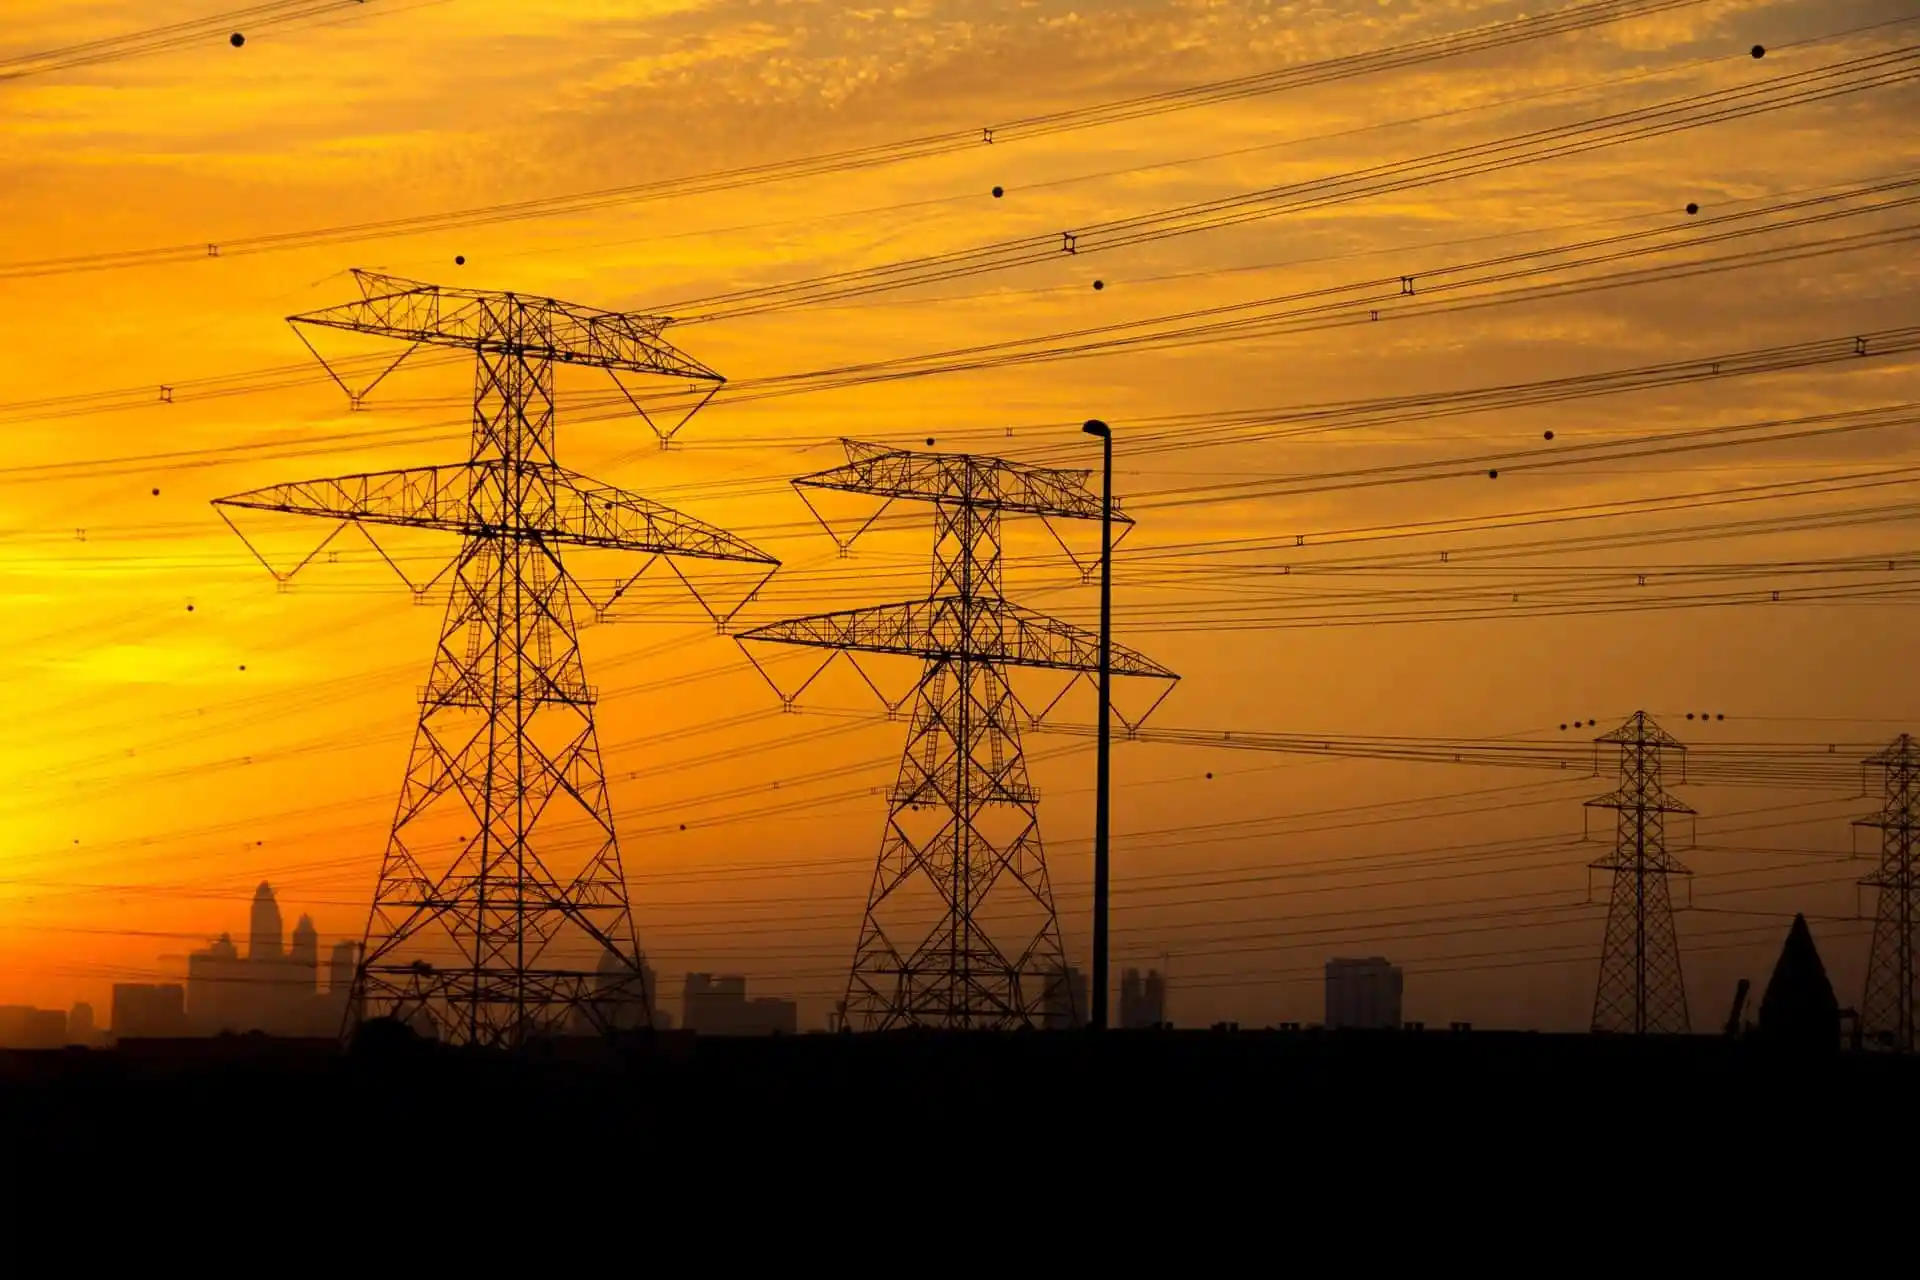 فلس الريف يزود 601 موقع بالكهرباء بكلفة 1.5 مليون دينار